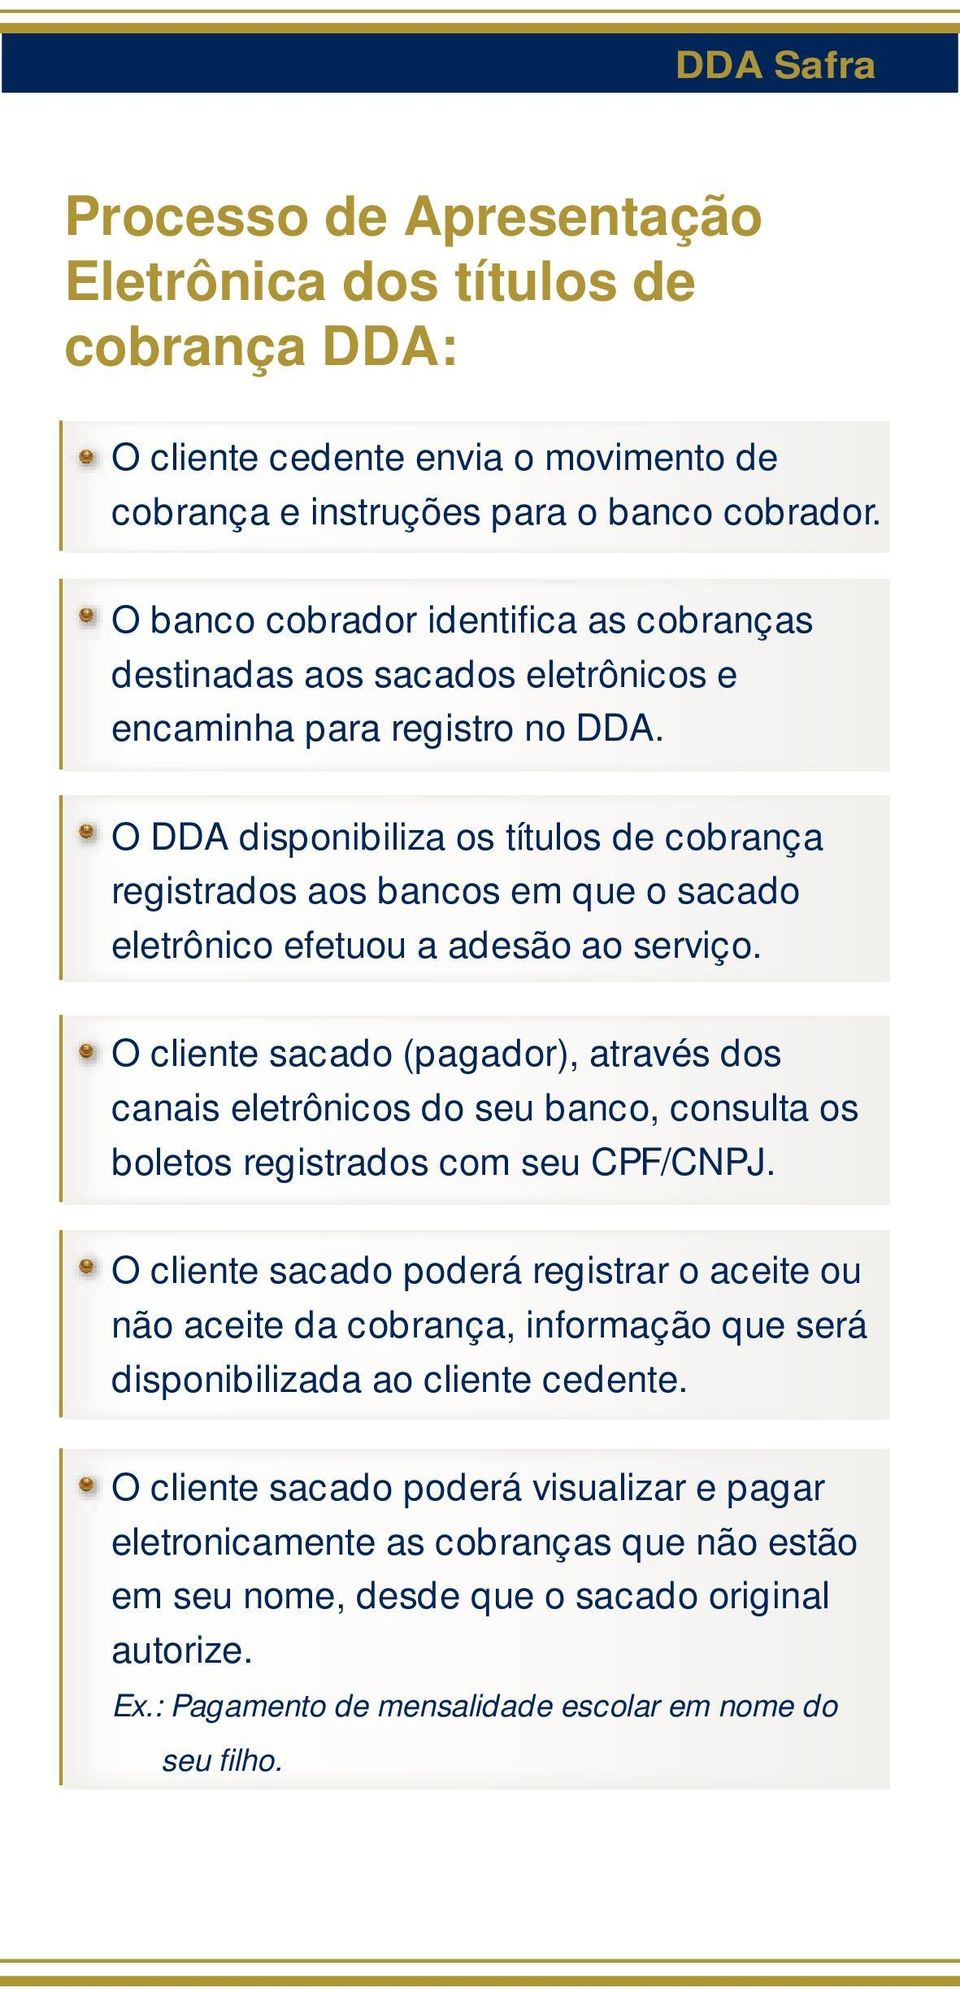 O DDA disponibiliza os títulos de cobrança registrados aos bancos em que o sacado eletrônico efetuou a adesão ao serviço.